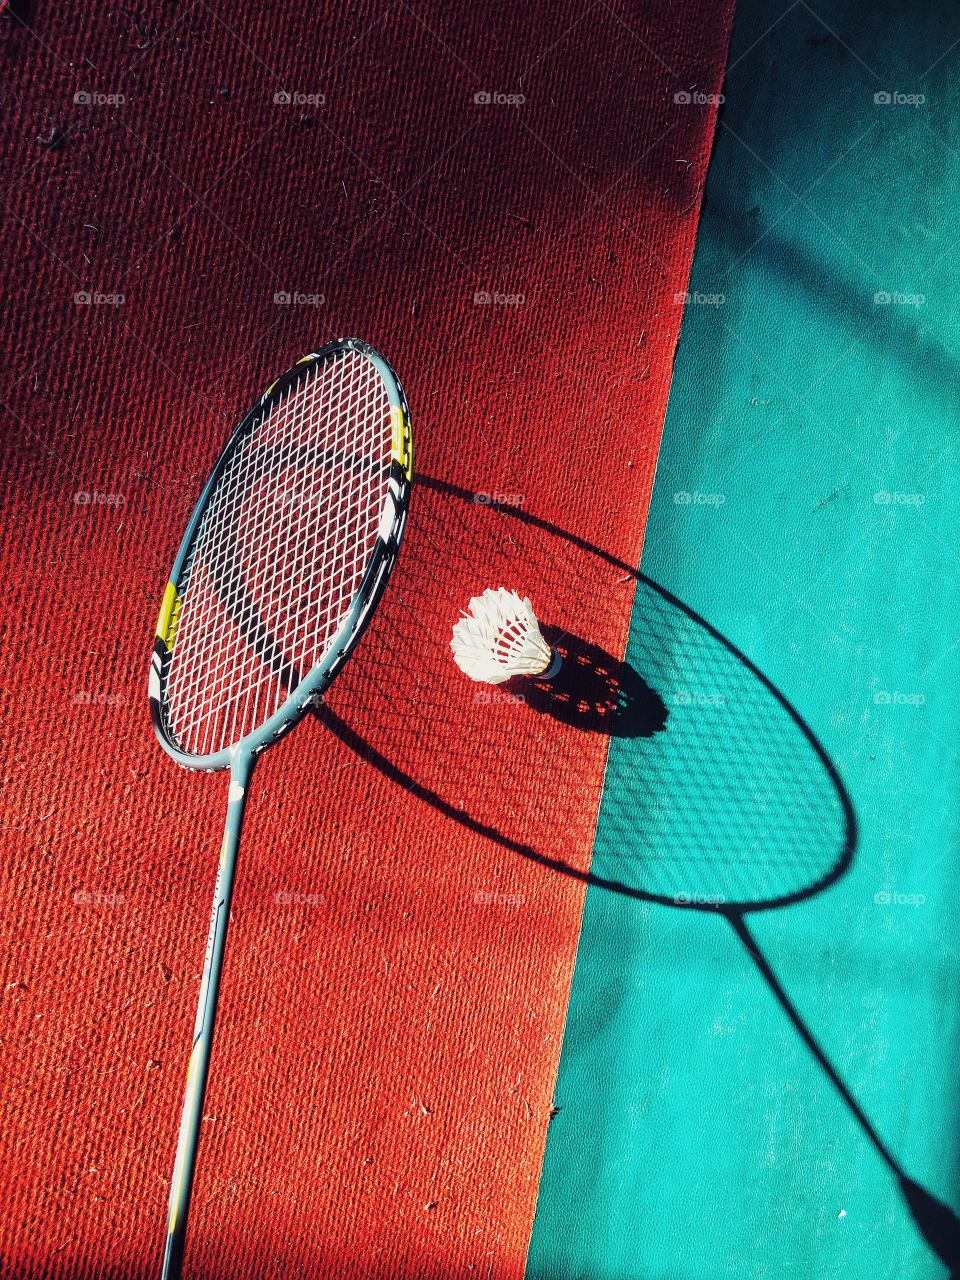 Badminton is a joyful sport